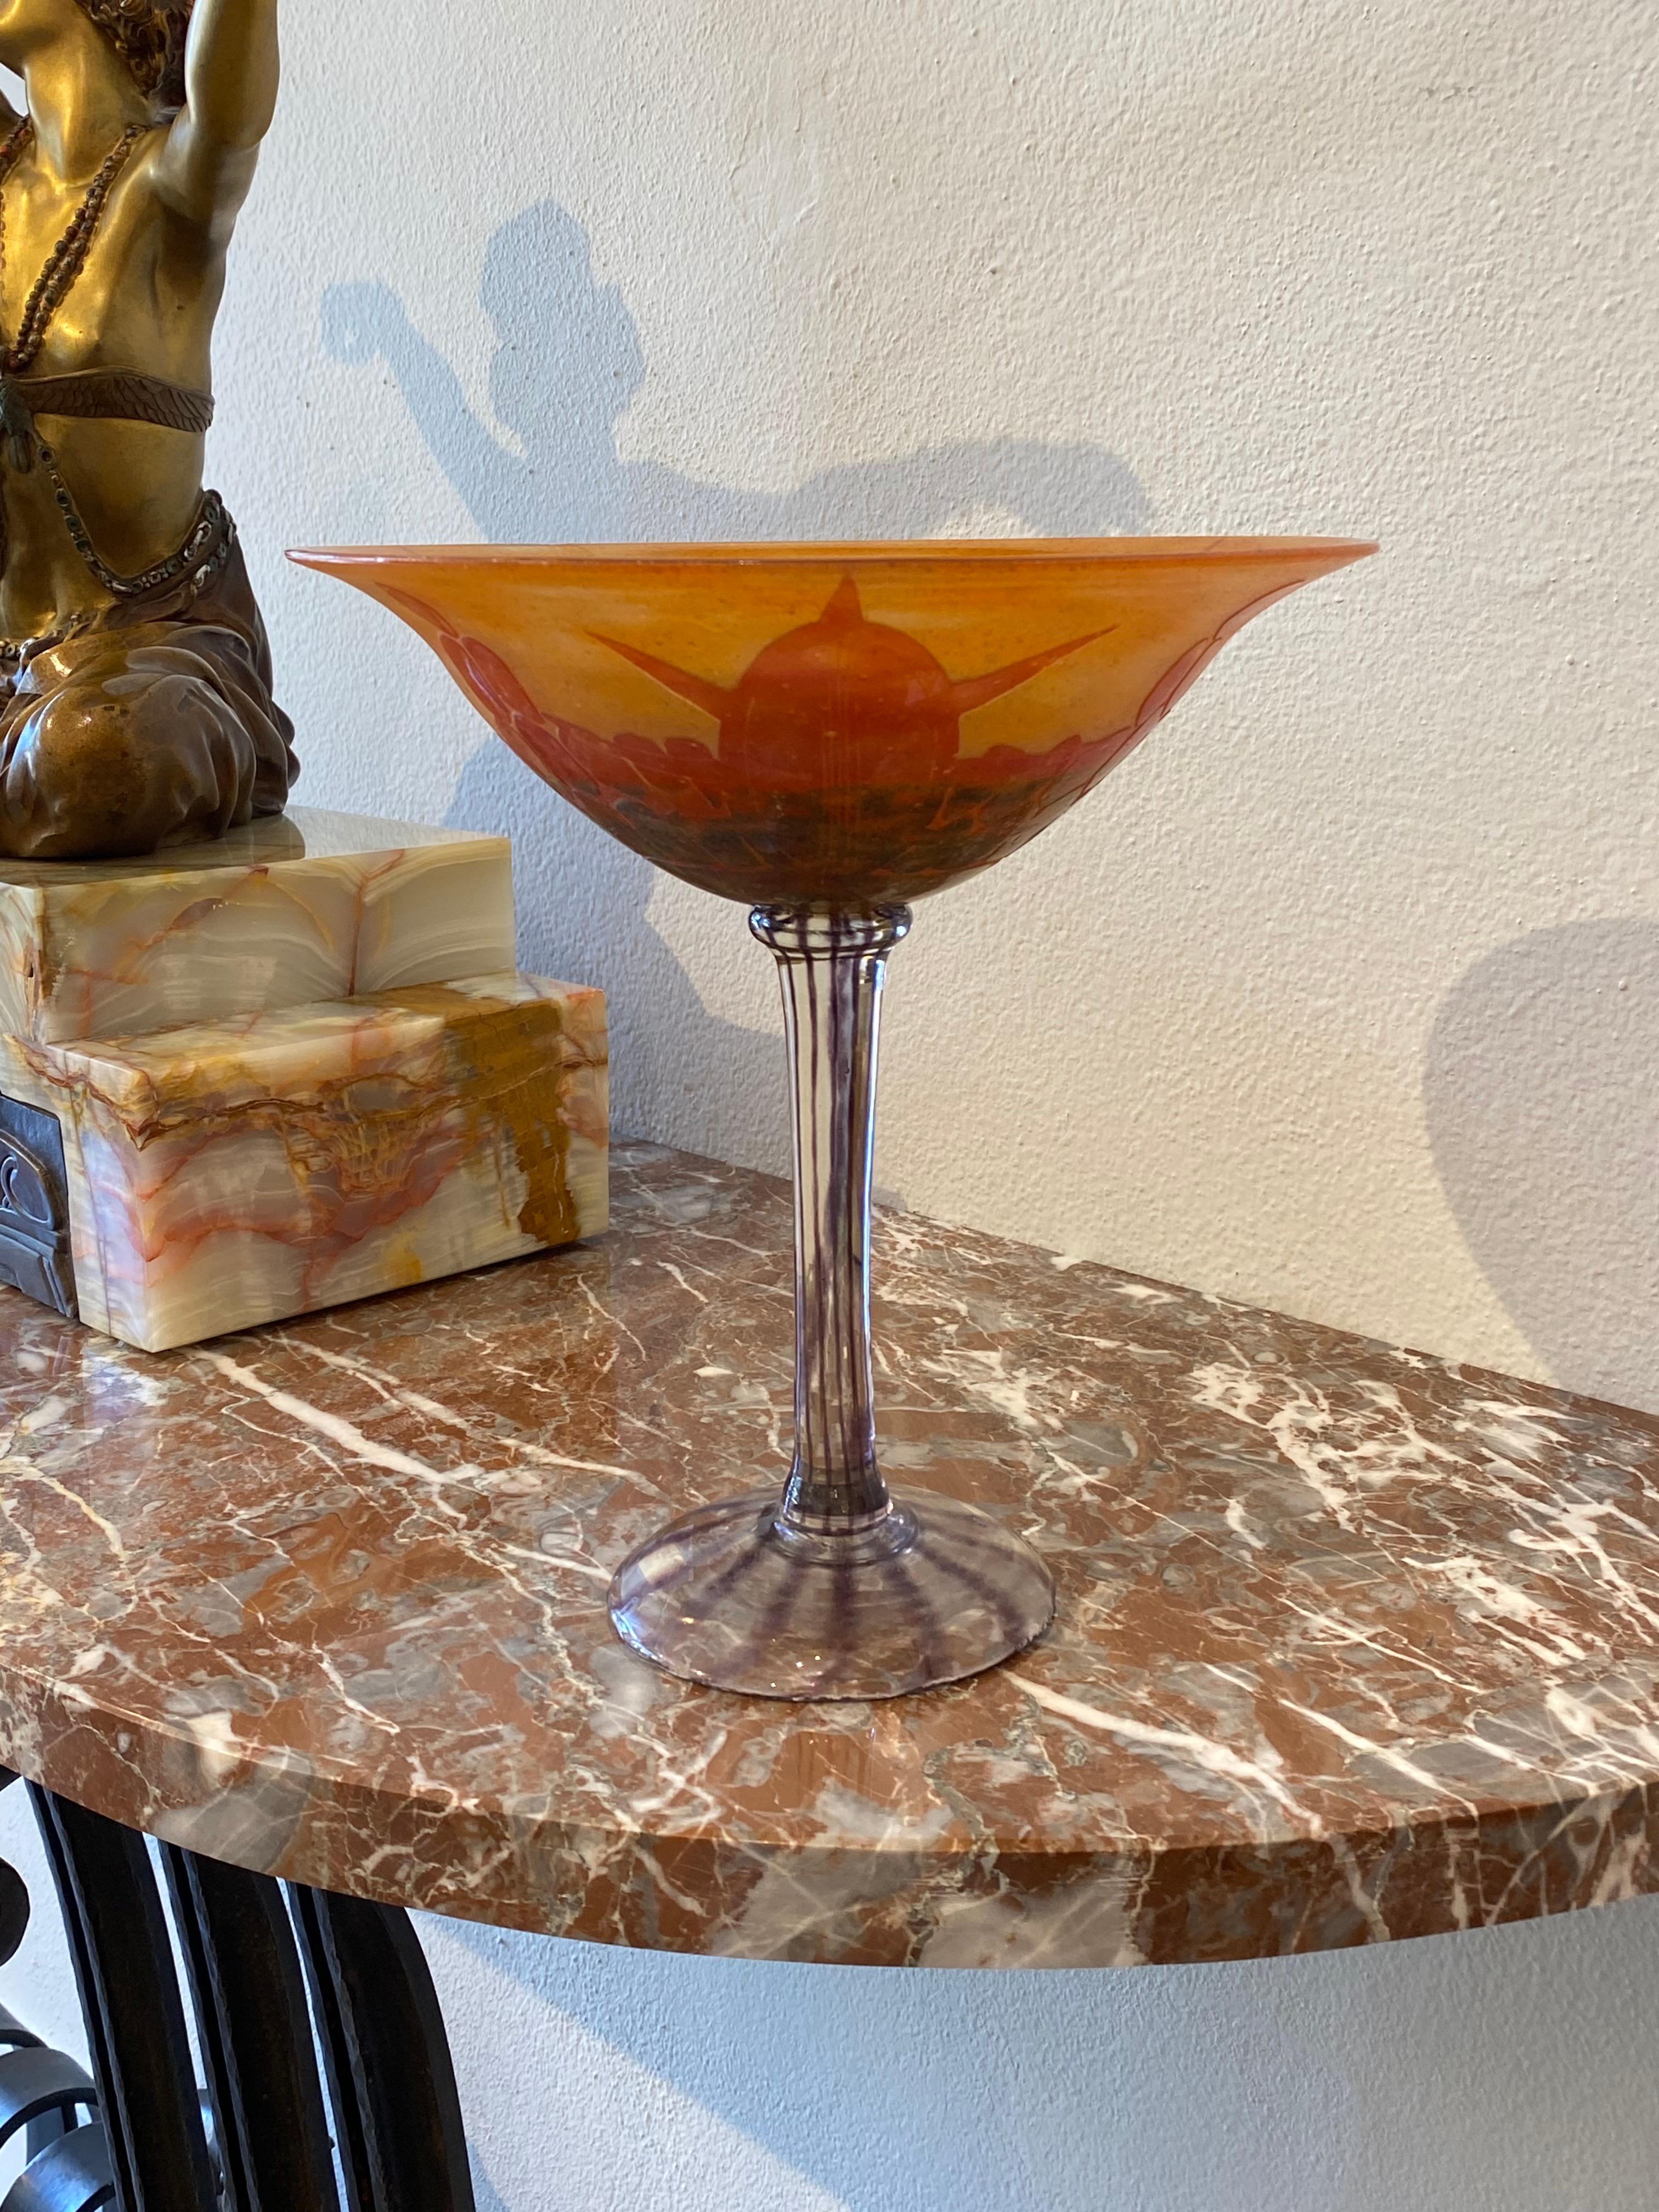 Eine kelchförmige Vase in Orange mit roten und grünen Überlagerungen.  Das Muster ist der Form einer Schildkröte nachempfunden und wird mit Säure geätzt.  Klar/Farblos aufgetragener Stiel und Fuß mit Violett gestreift.  Dieses Stück gehört zu der